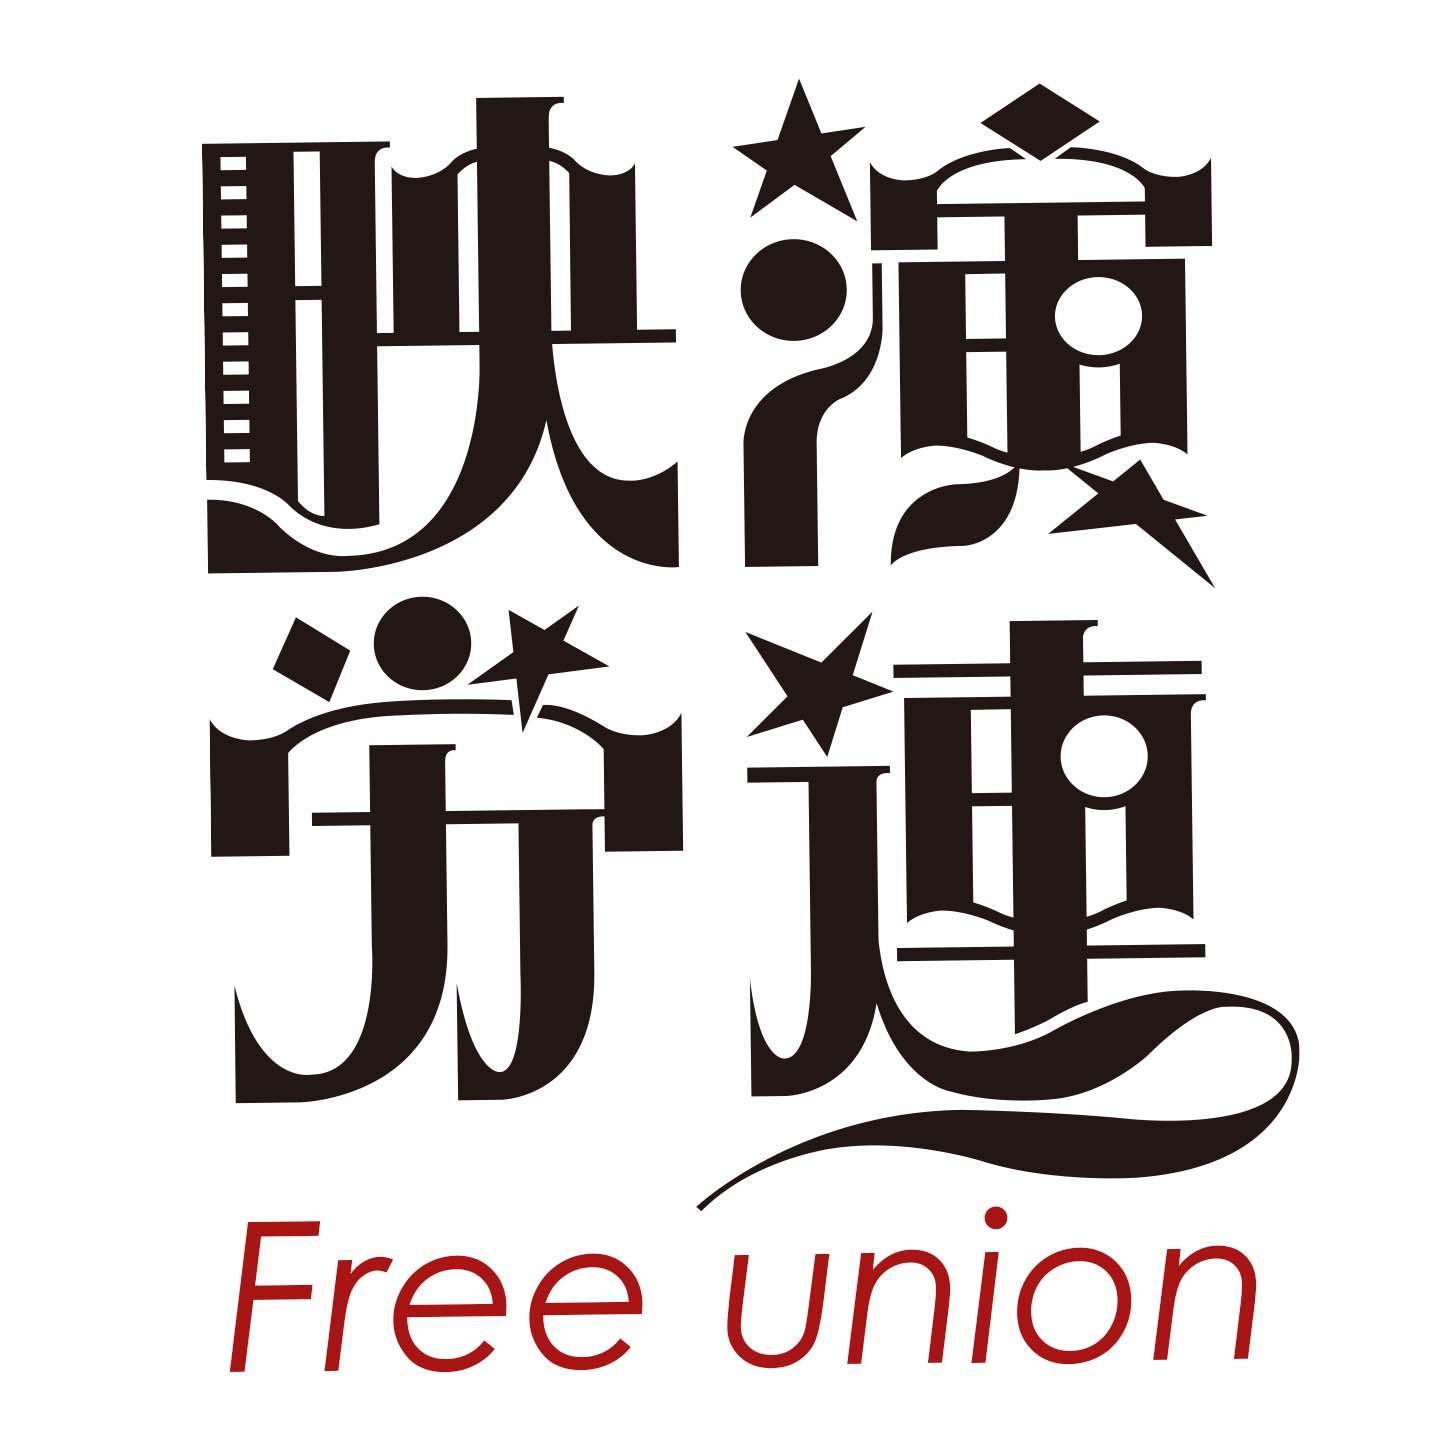 映演労連フリーユニオンは、映画、演劇、映像関連の労働者のための個人加盟の労働組合です。